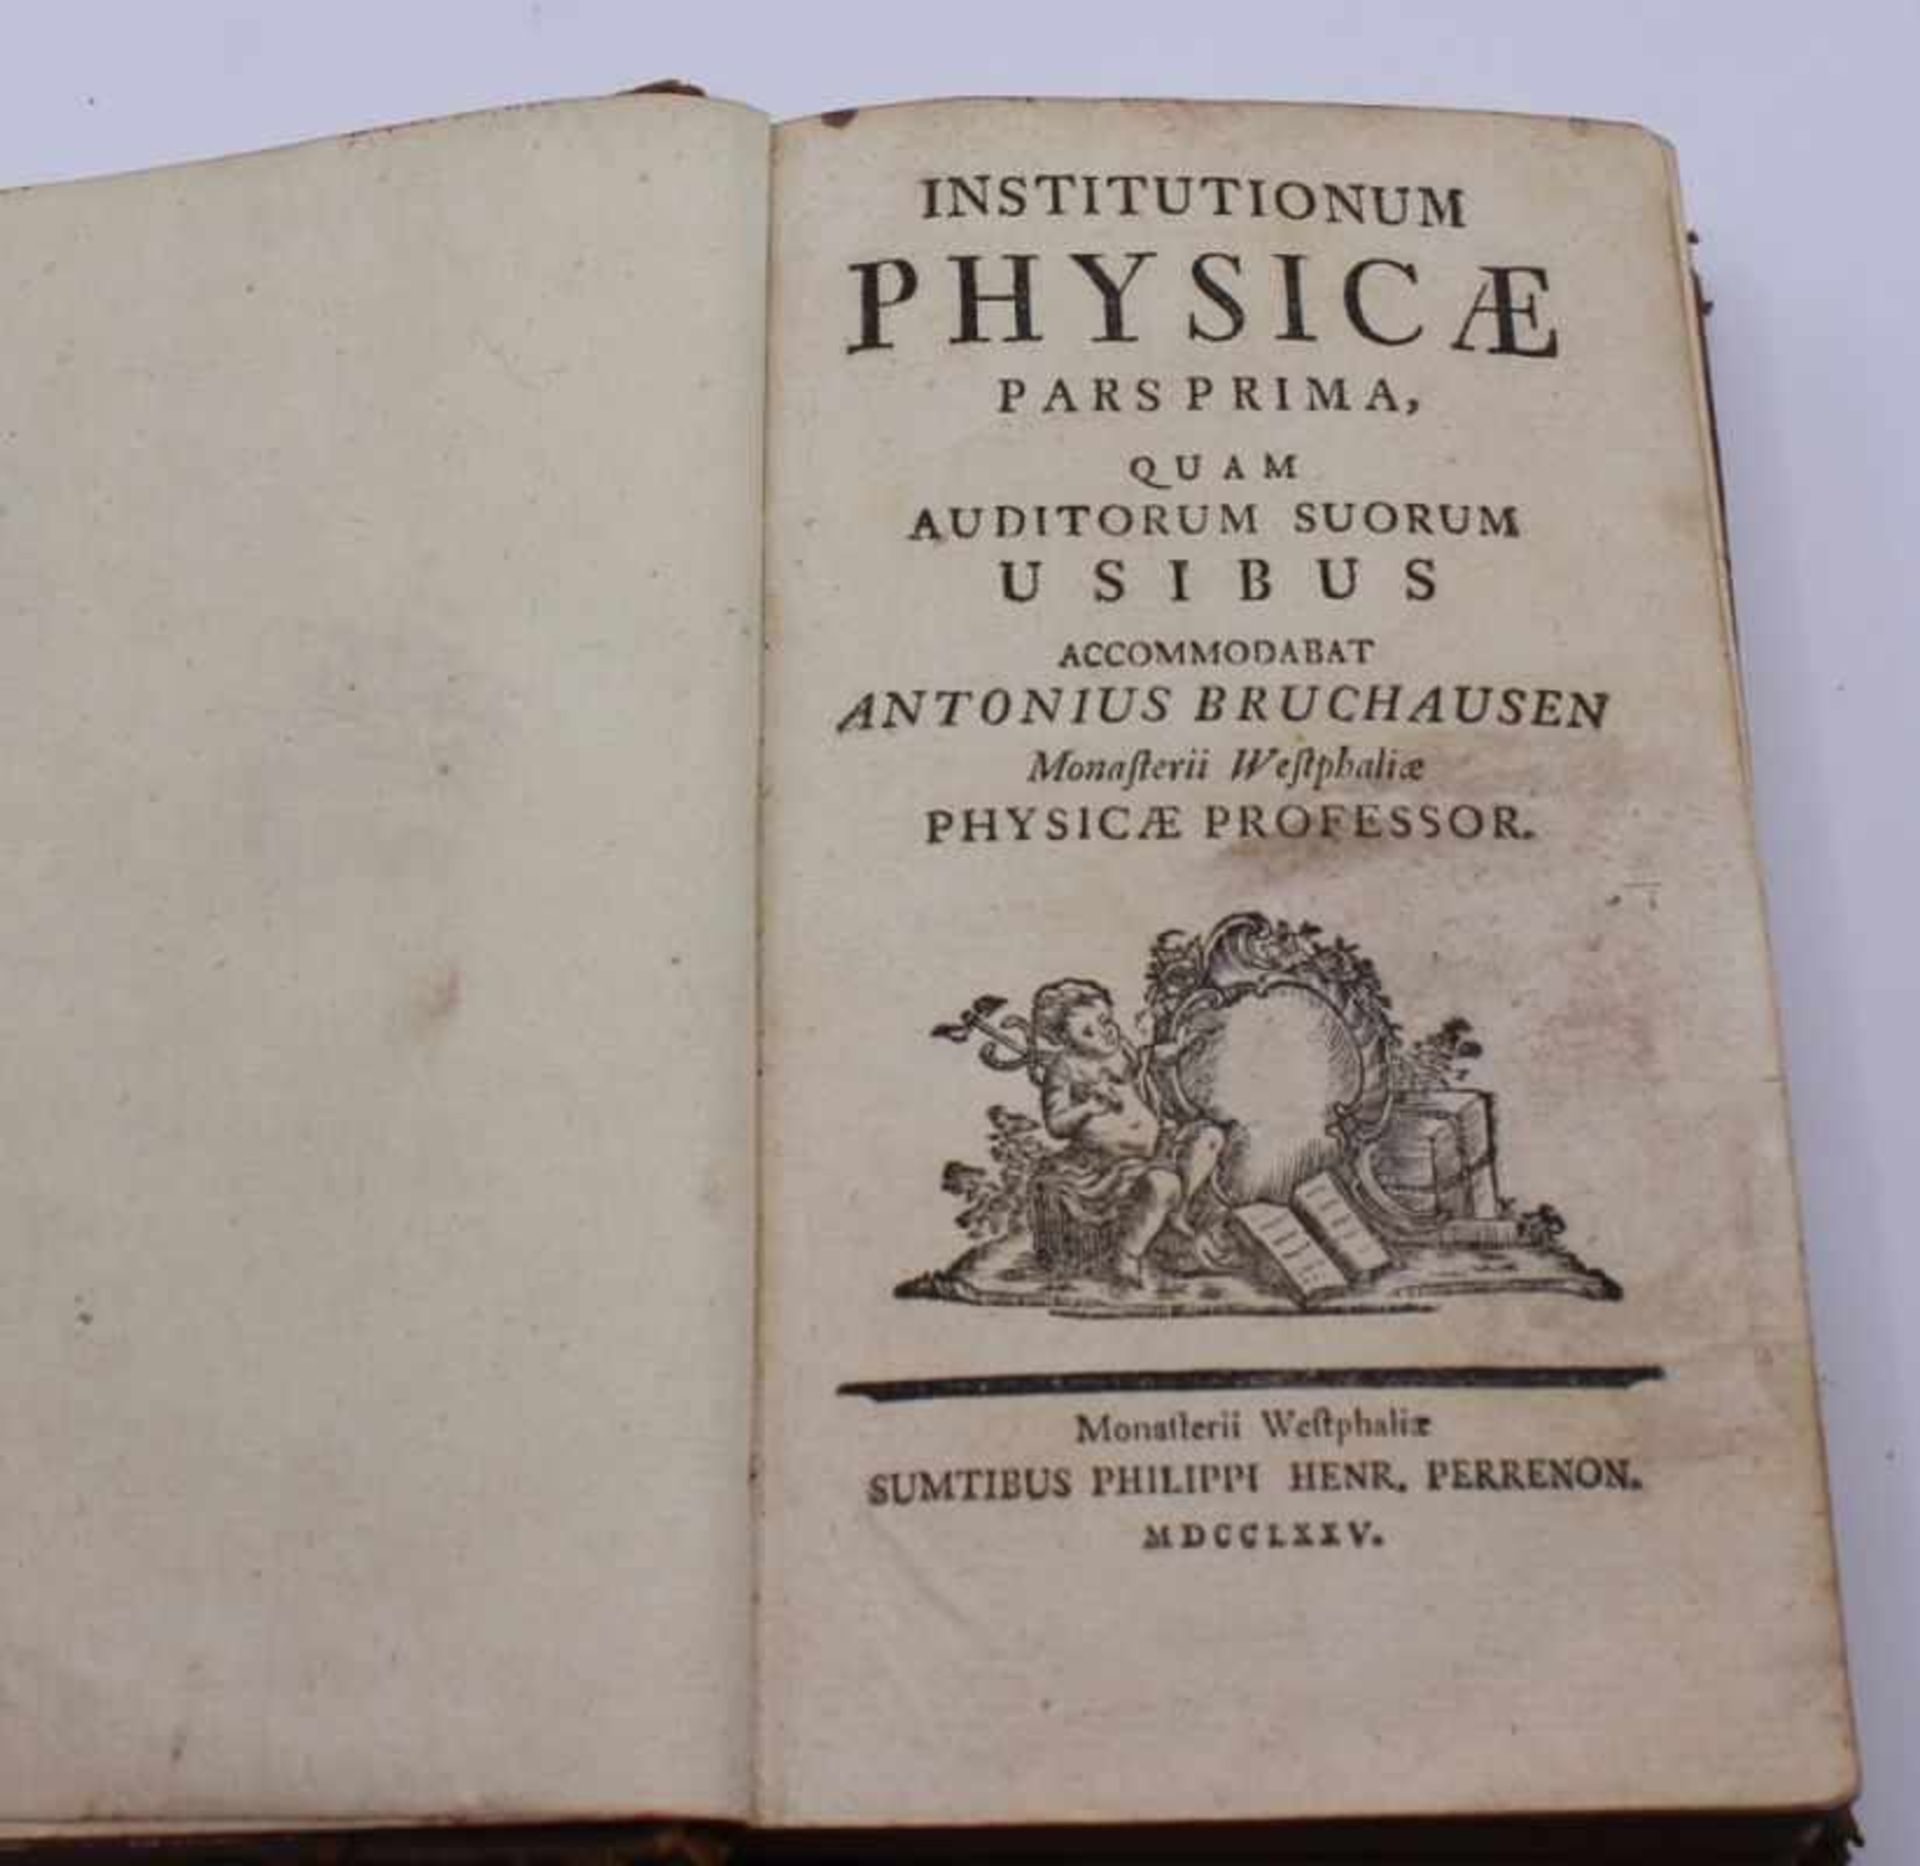 Buch - Anton Bruchhausen (1735 - 1815 Münster) "Institutionum Physica Pars Prima, quam auditorum